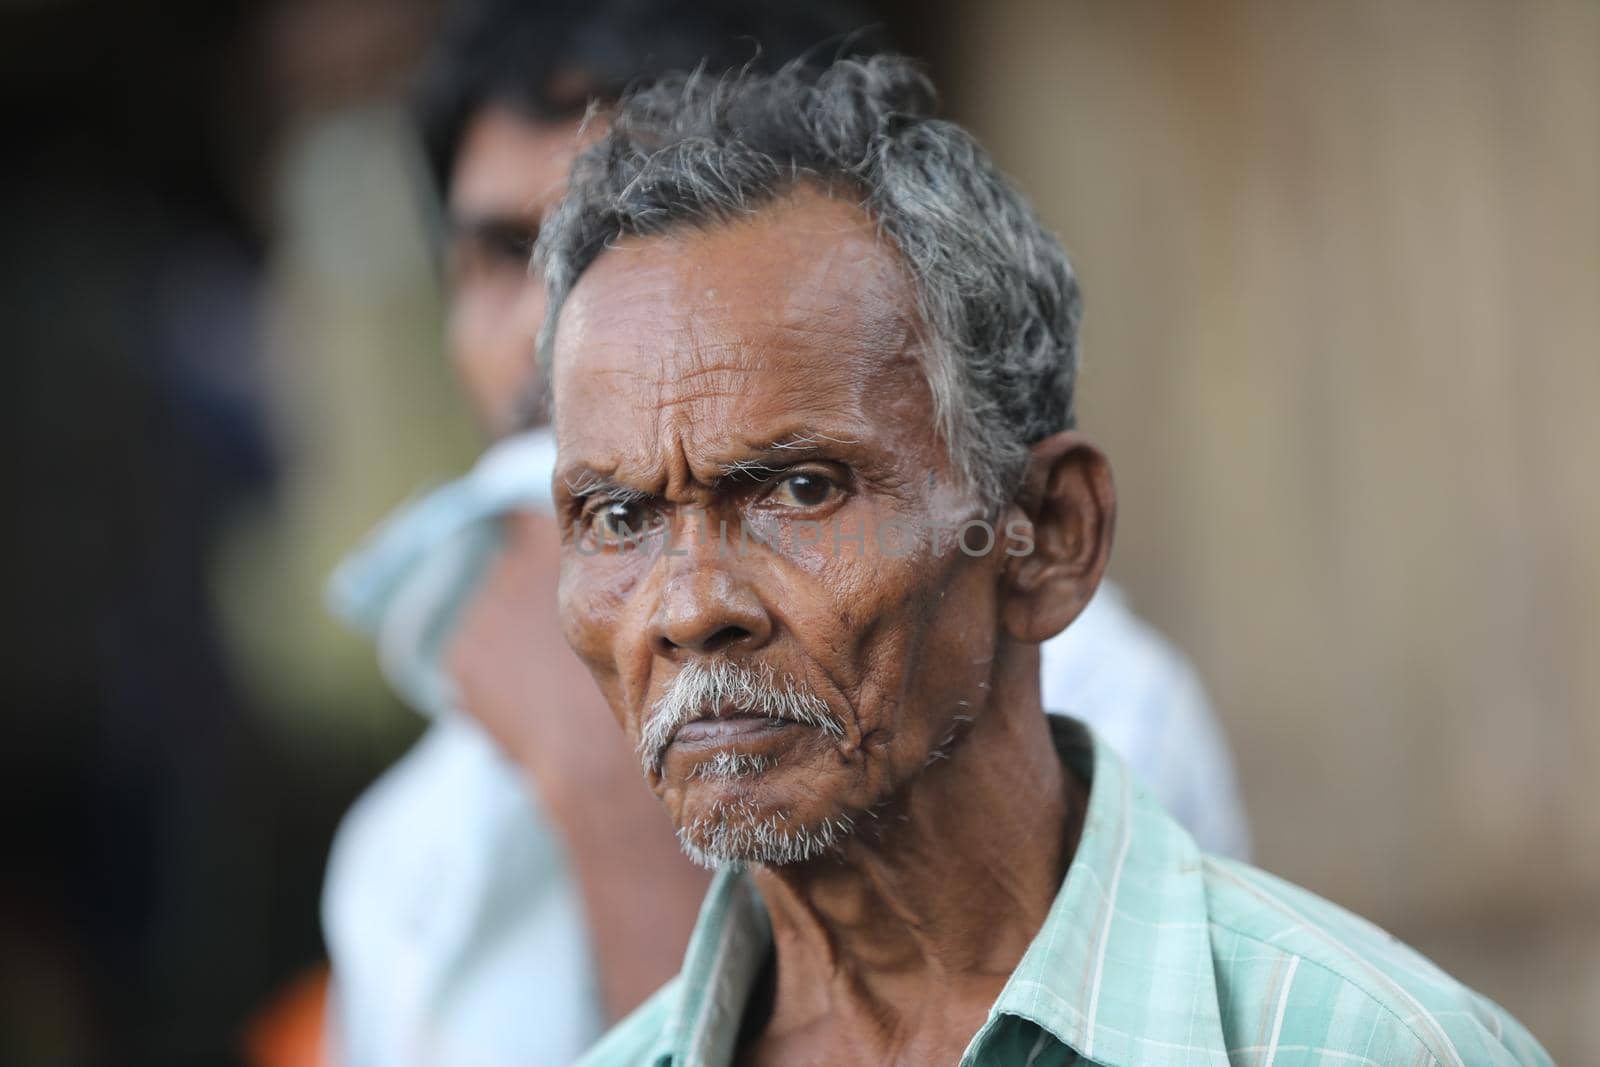 village poor people in Hyderabad India by rajastills